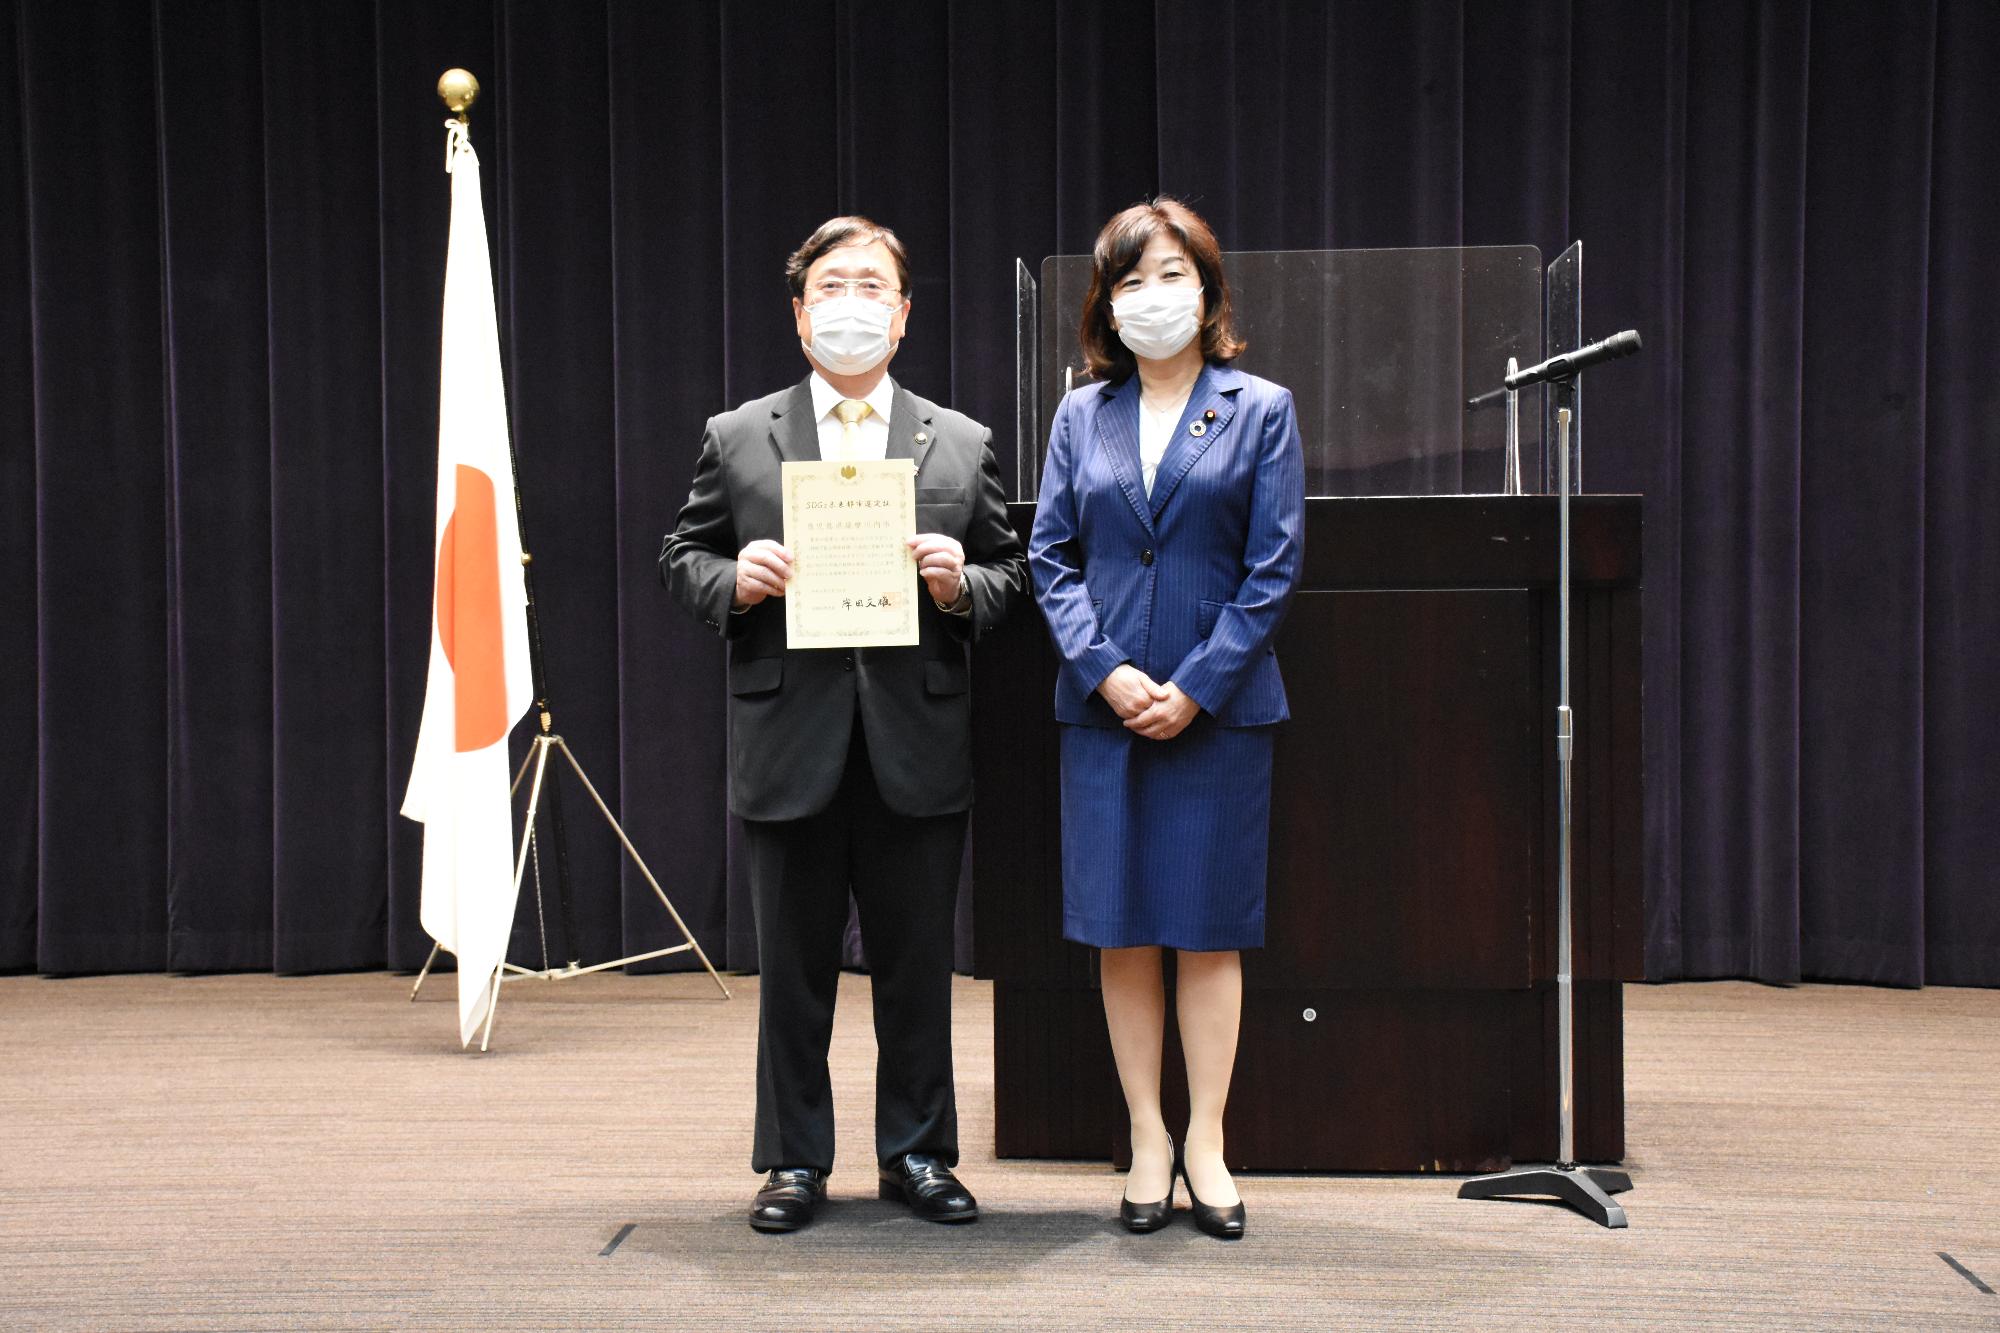 選定証授与式で田中市長と野田地方創生担当大臣が並んでいる写真